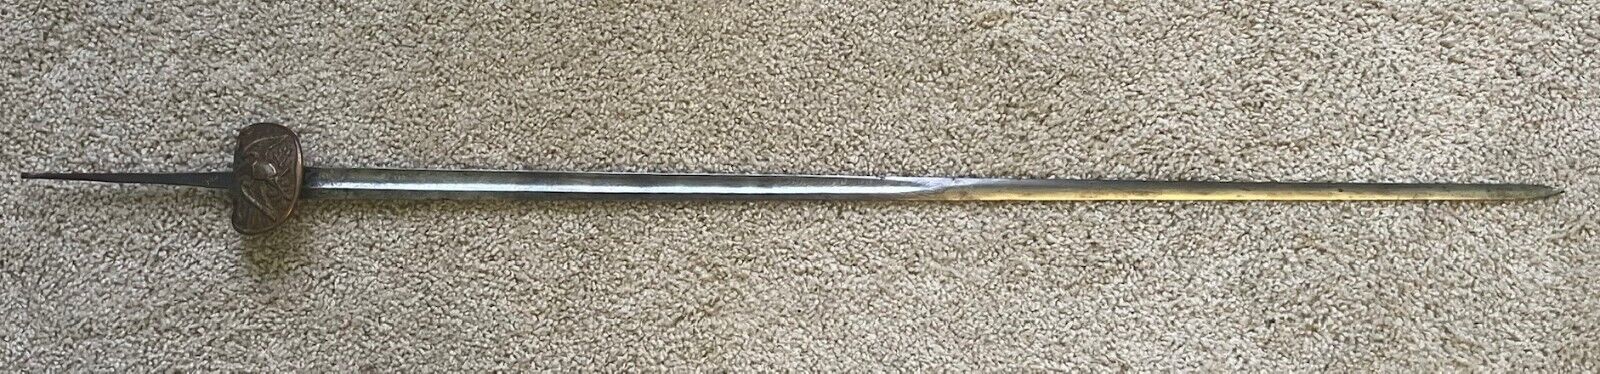 Pre Civil War Militia Sword Blade